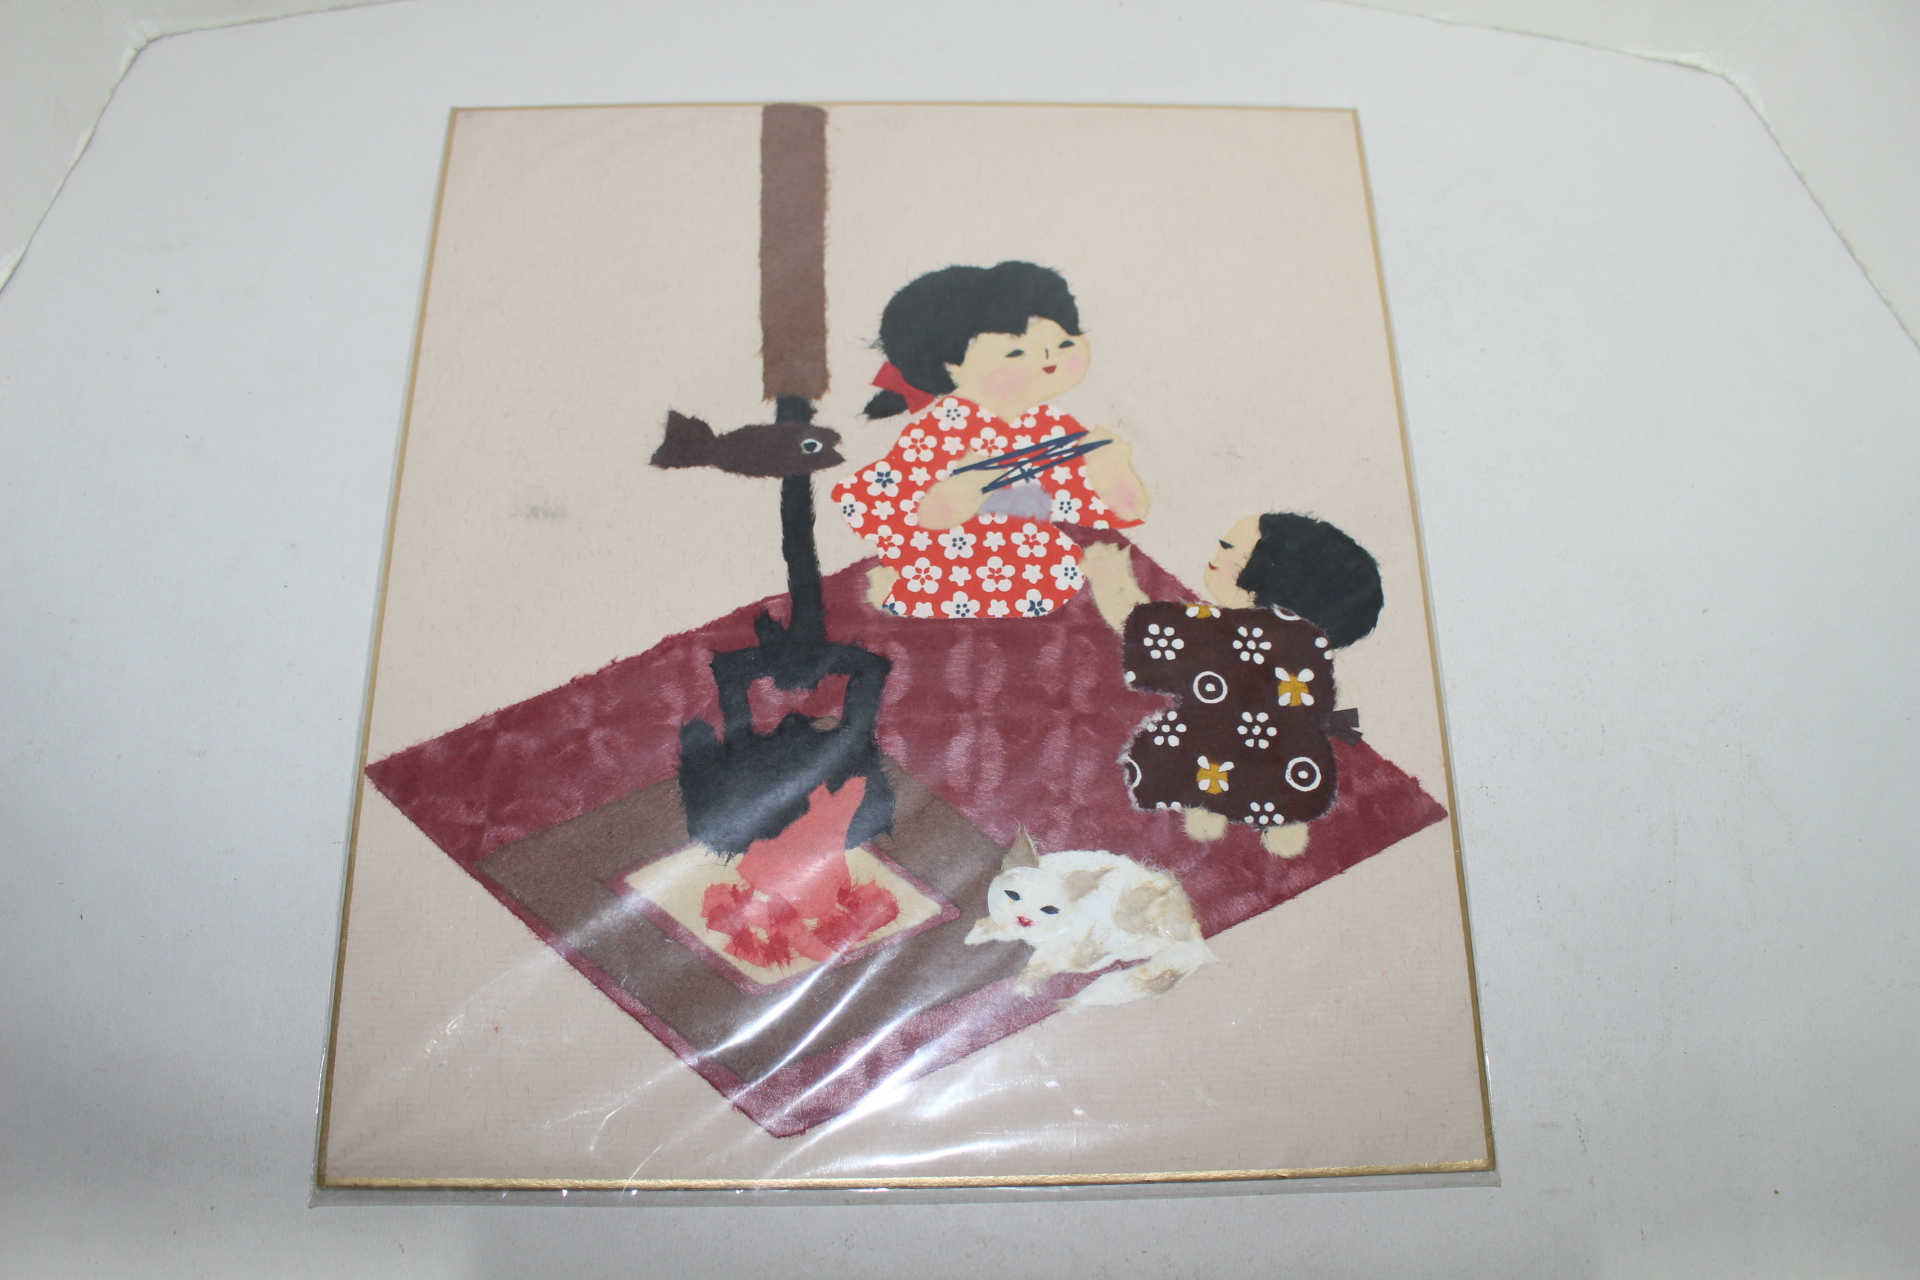 일본화지를 붙여만든 종이공예그림